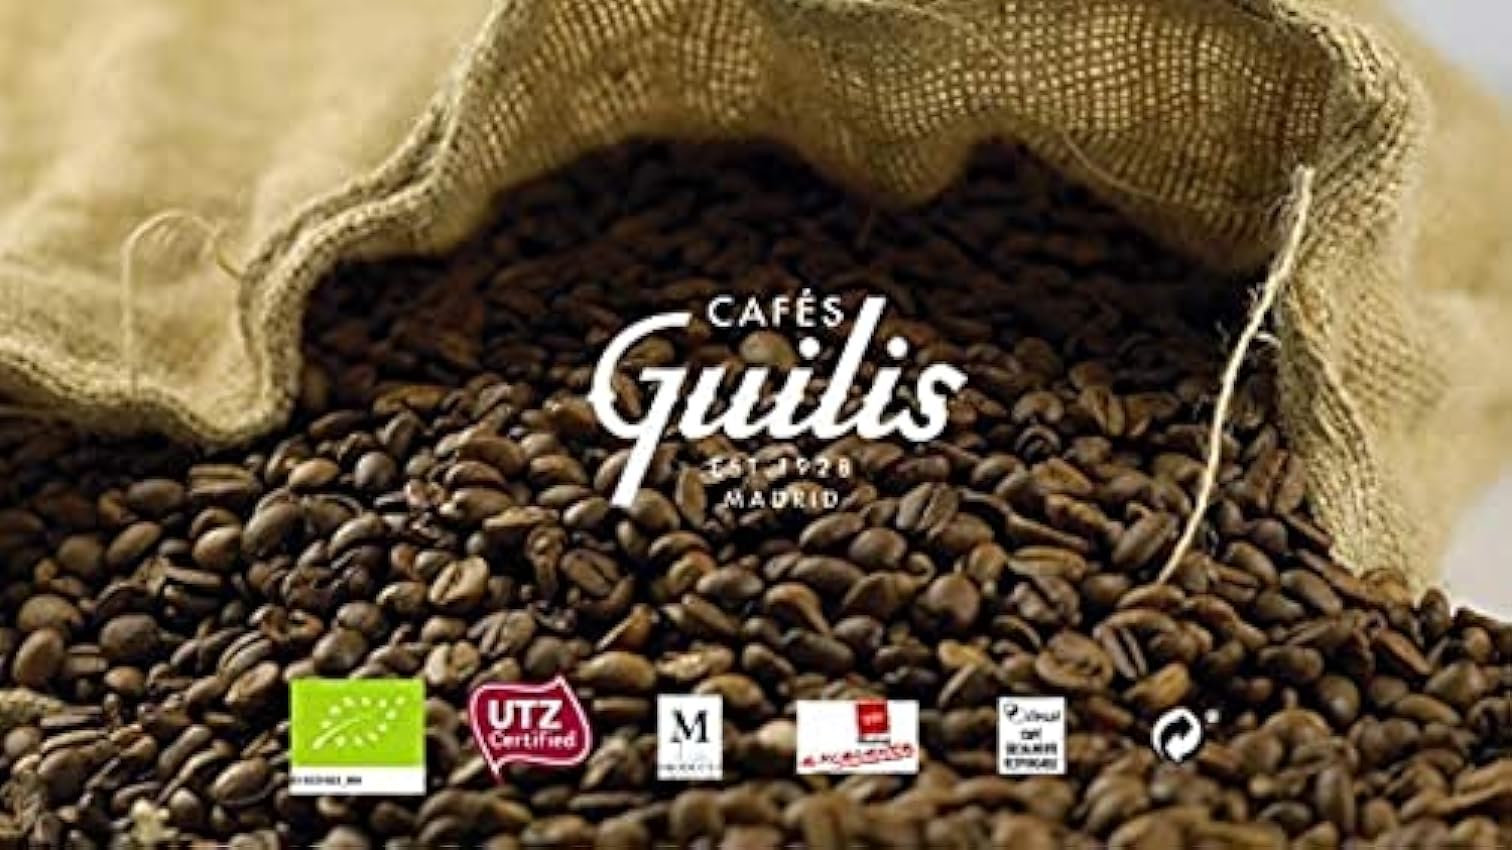 CAFES GUILIS DESDE 1928 AMANTES DEL CAFE Café en Grano Arábica Descafeinado Orgánico Ecológico Natural 500 gr GbfShLaO